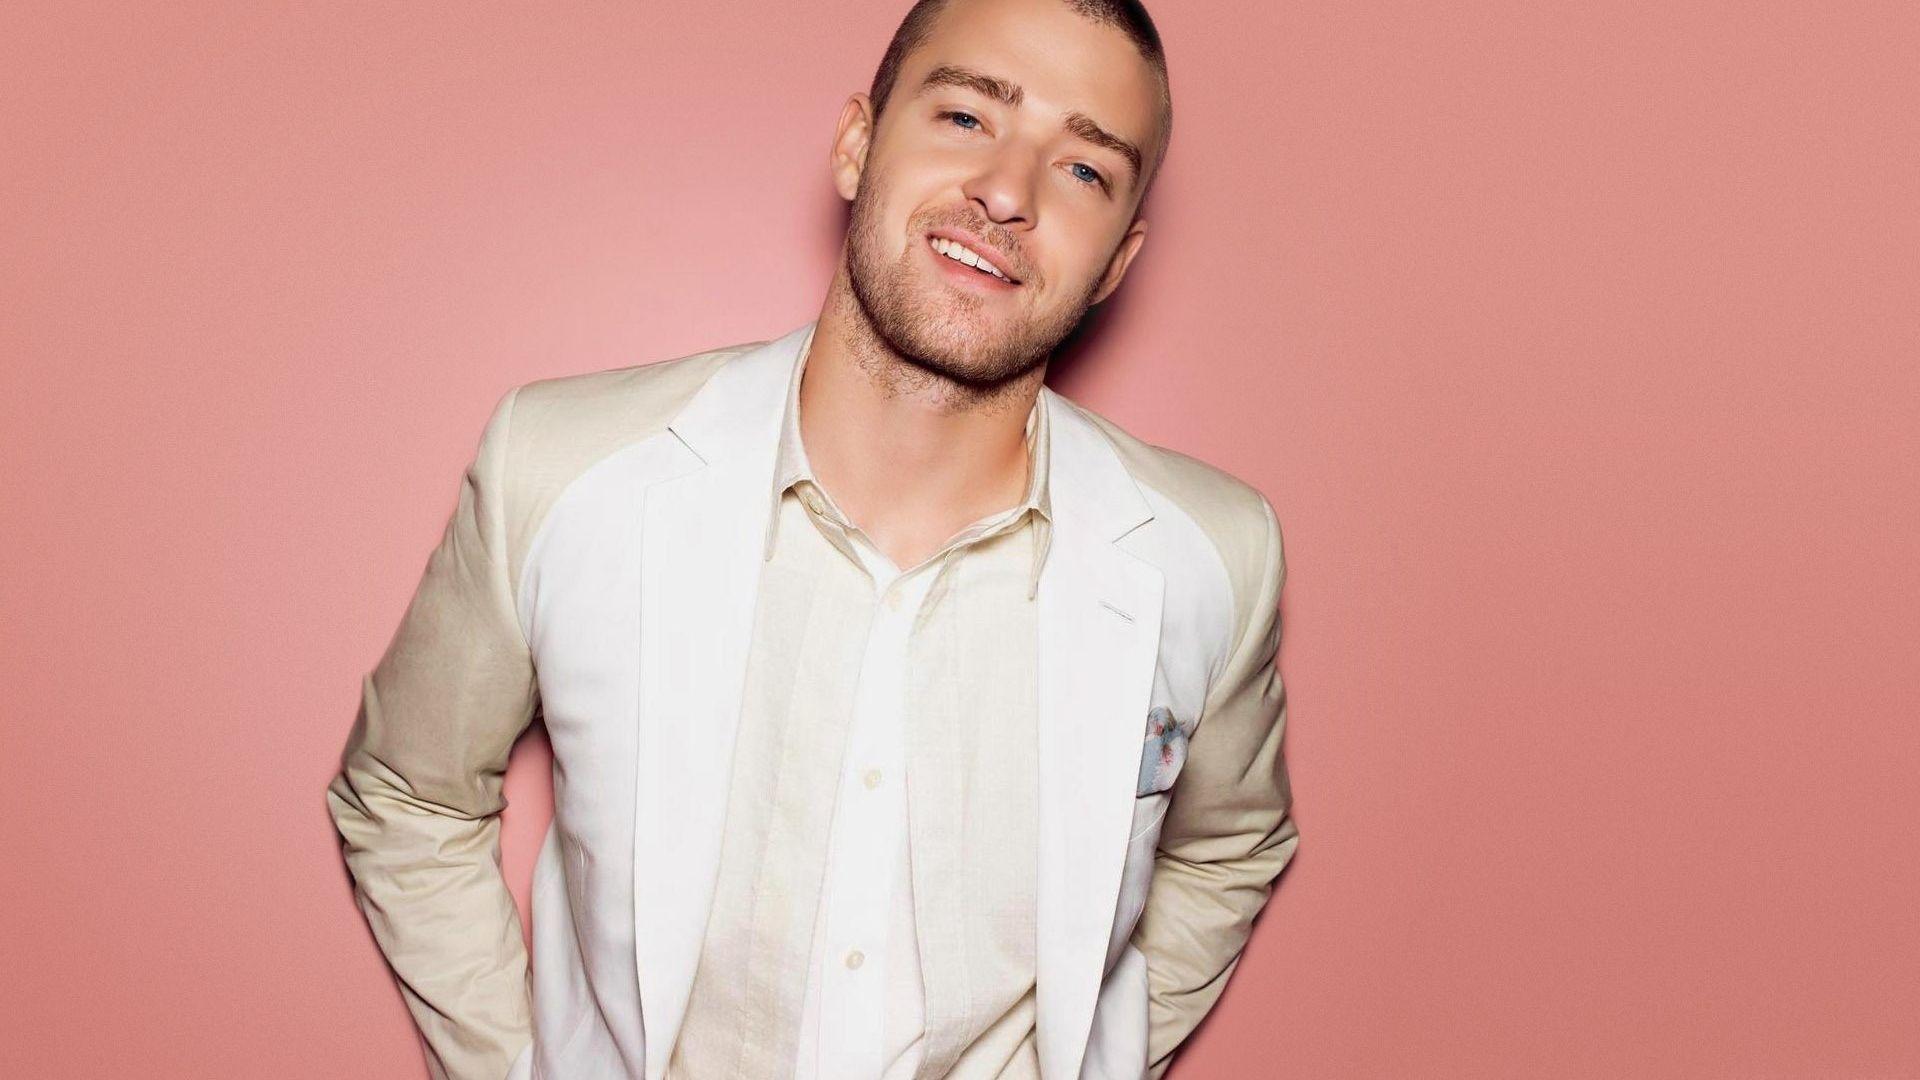 Justin Timberlake Wallpaper. TanukinoSippo